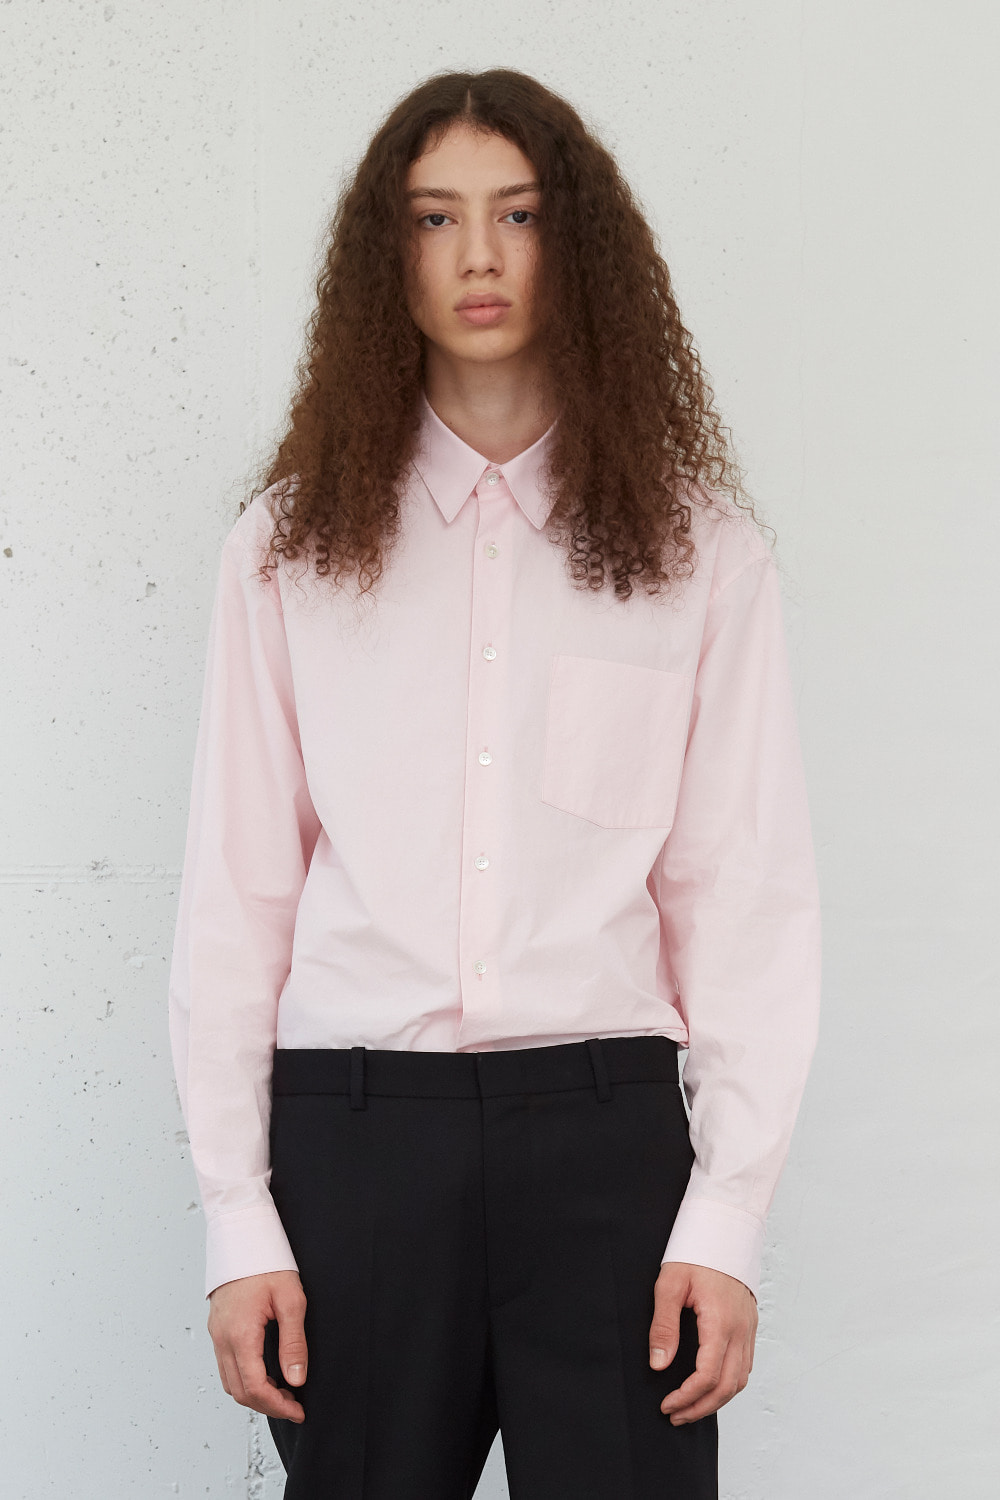 [-40%] 스탠다드 셔츠 IN 핑크